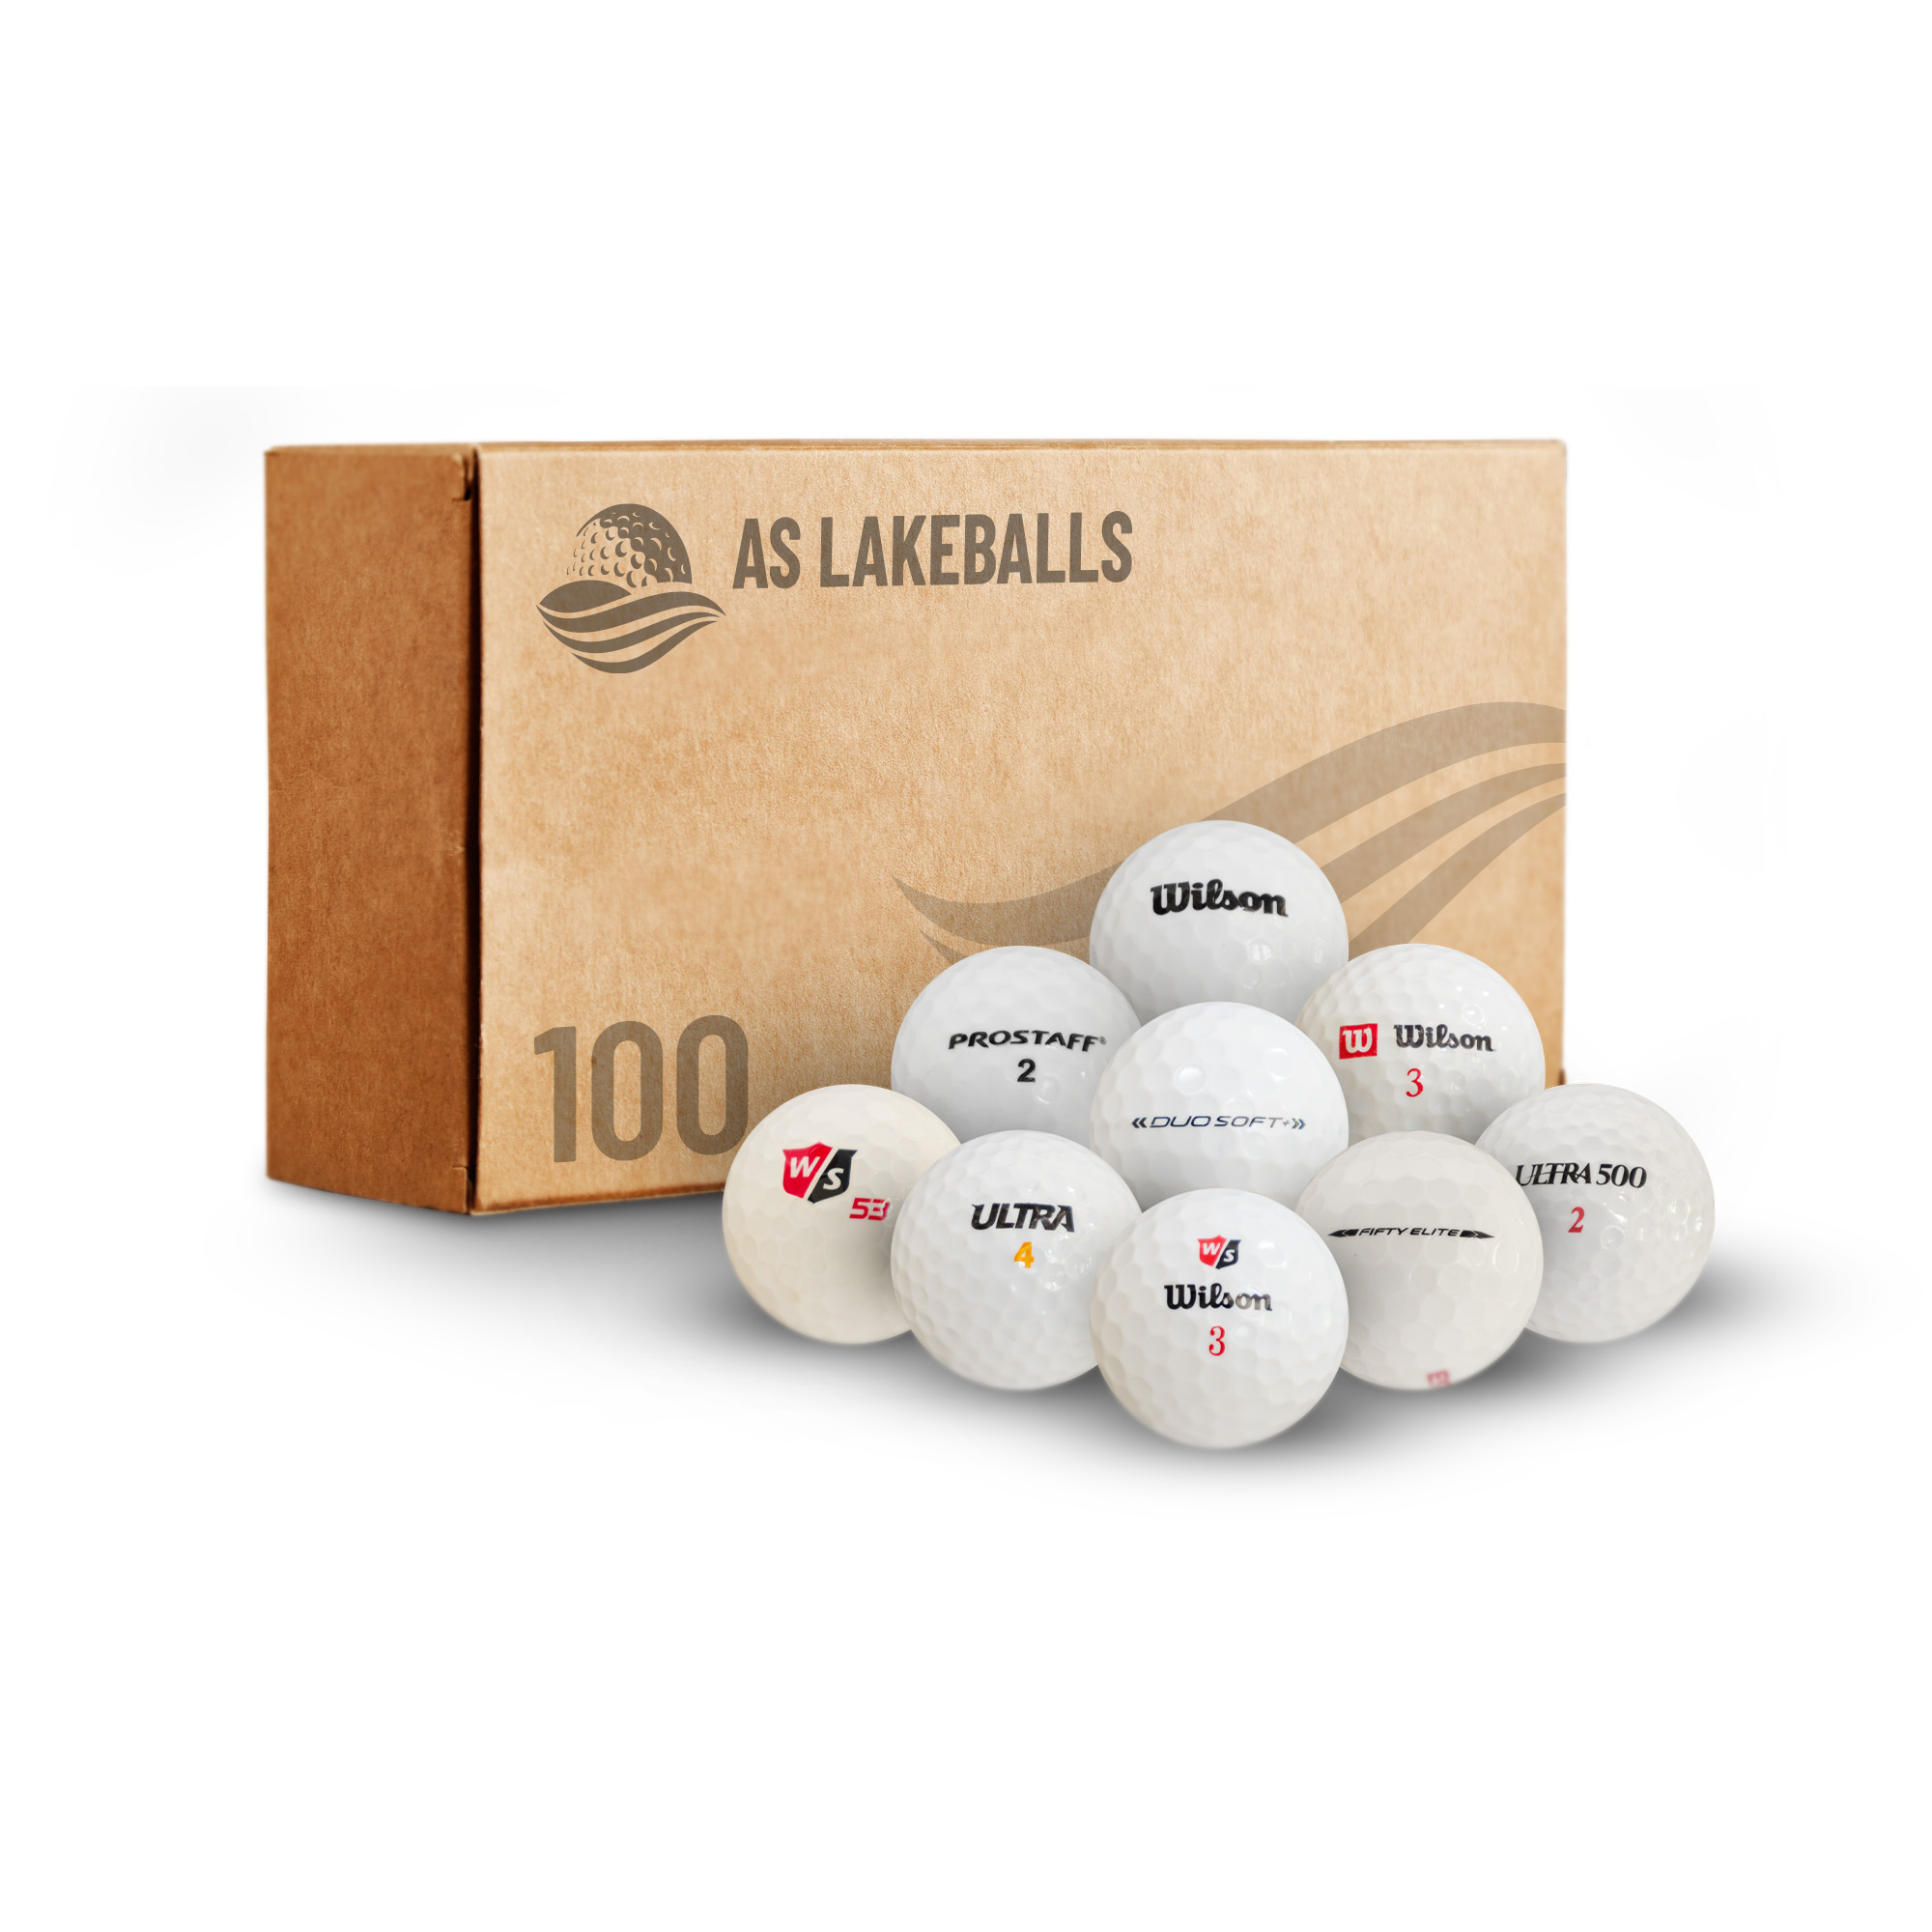 100 Stück Wilson Mix AAA-AA Lakeballs bei AS Lakeballs günstig kaufen